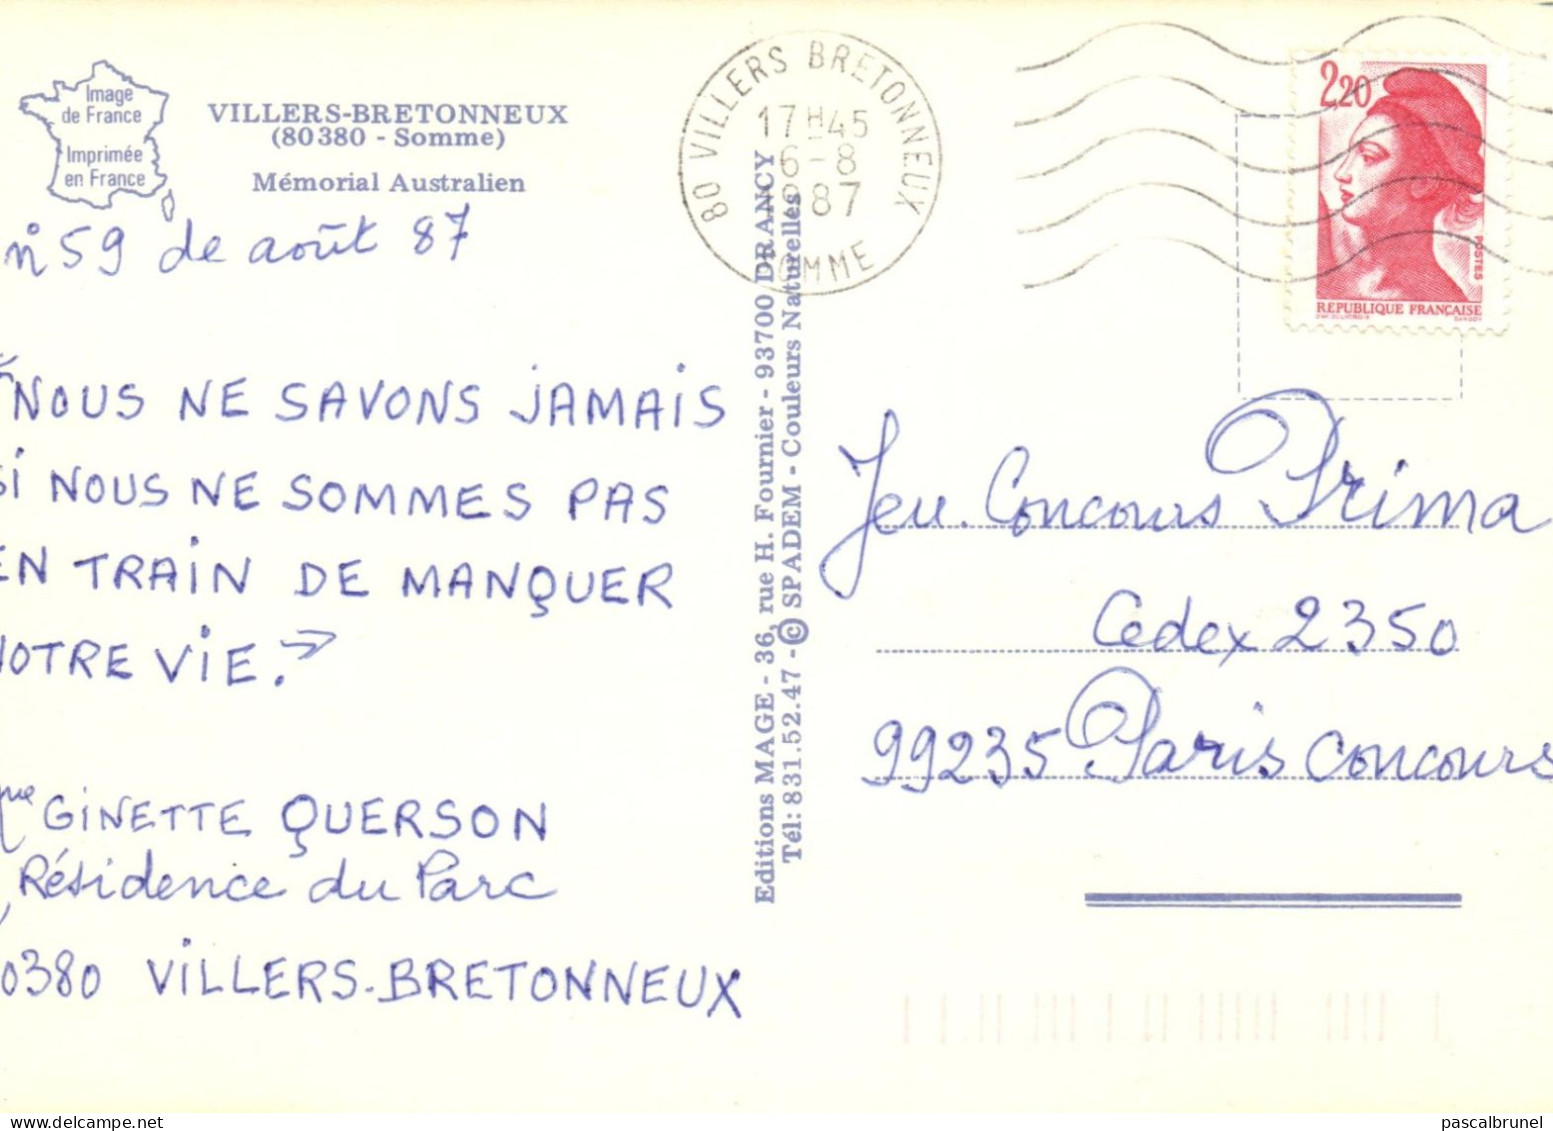 VILLERS BRETONNEUX - MEMORIAL AUSTRALIEN - Villers Bretonneux